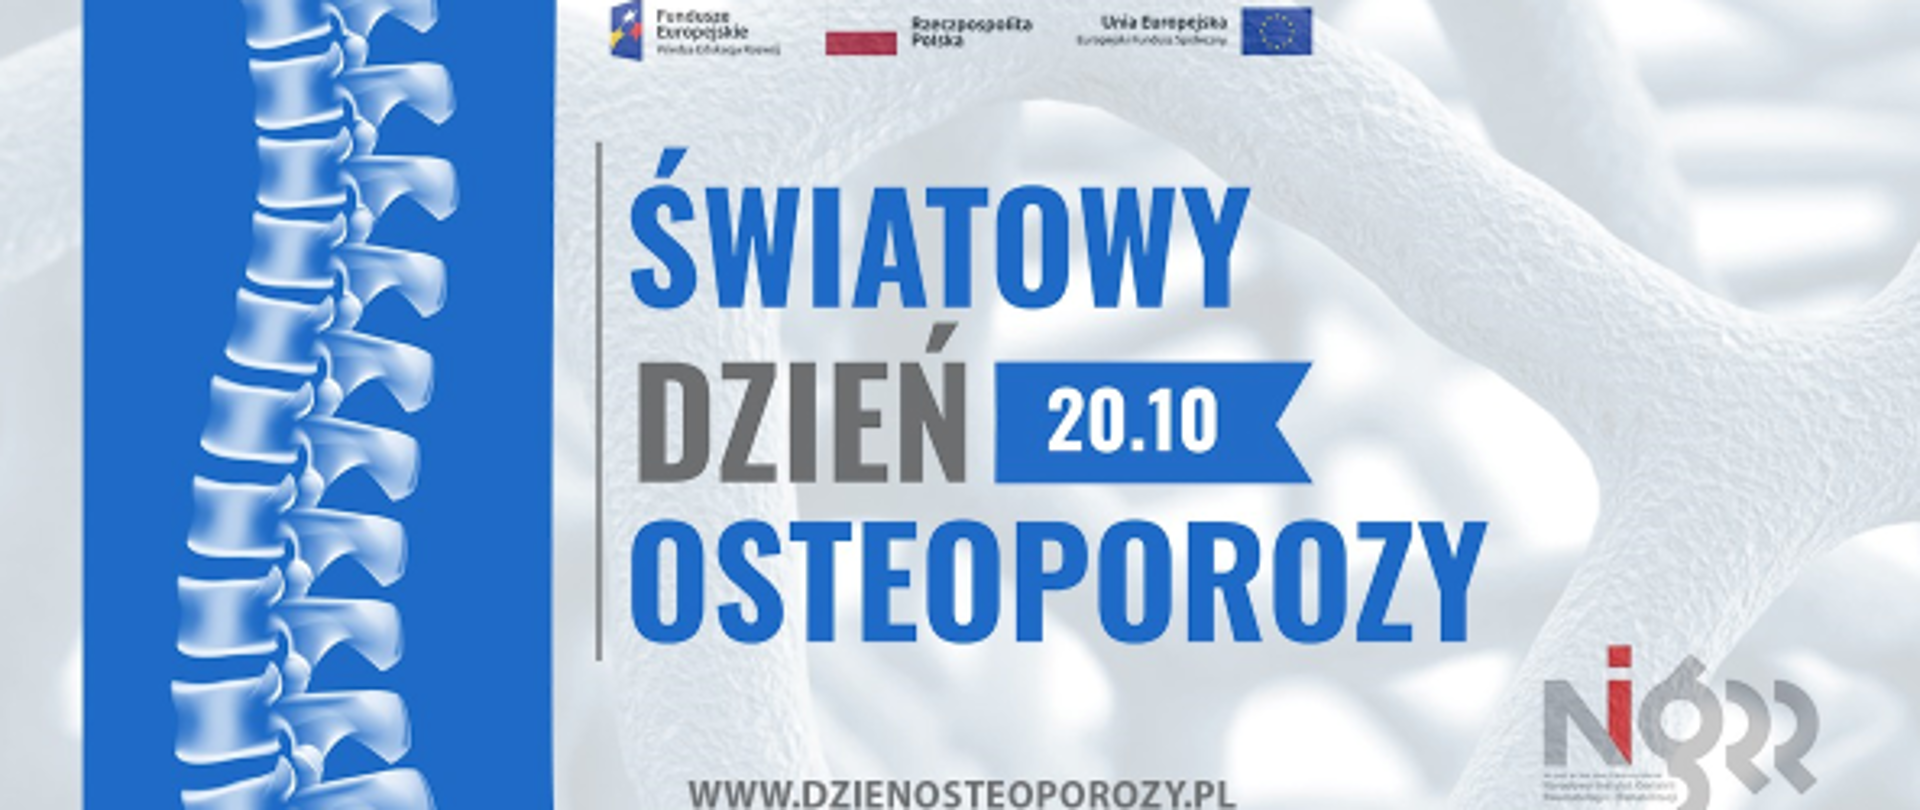 Konferencja z okazji Światowego Dnia Osteoporozy